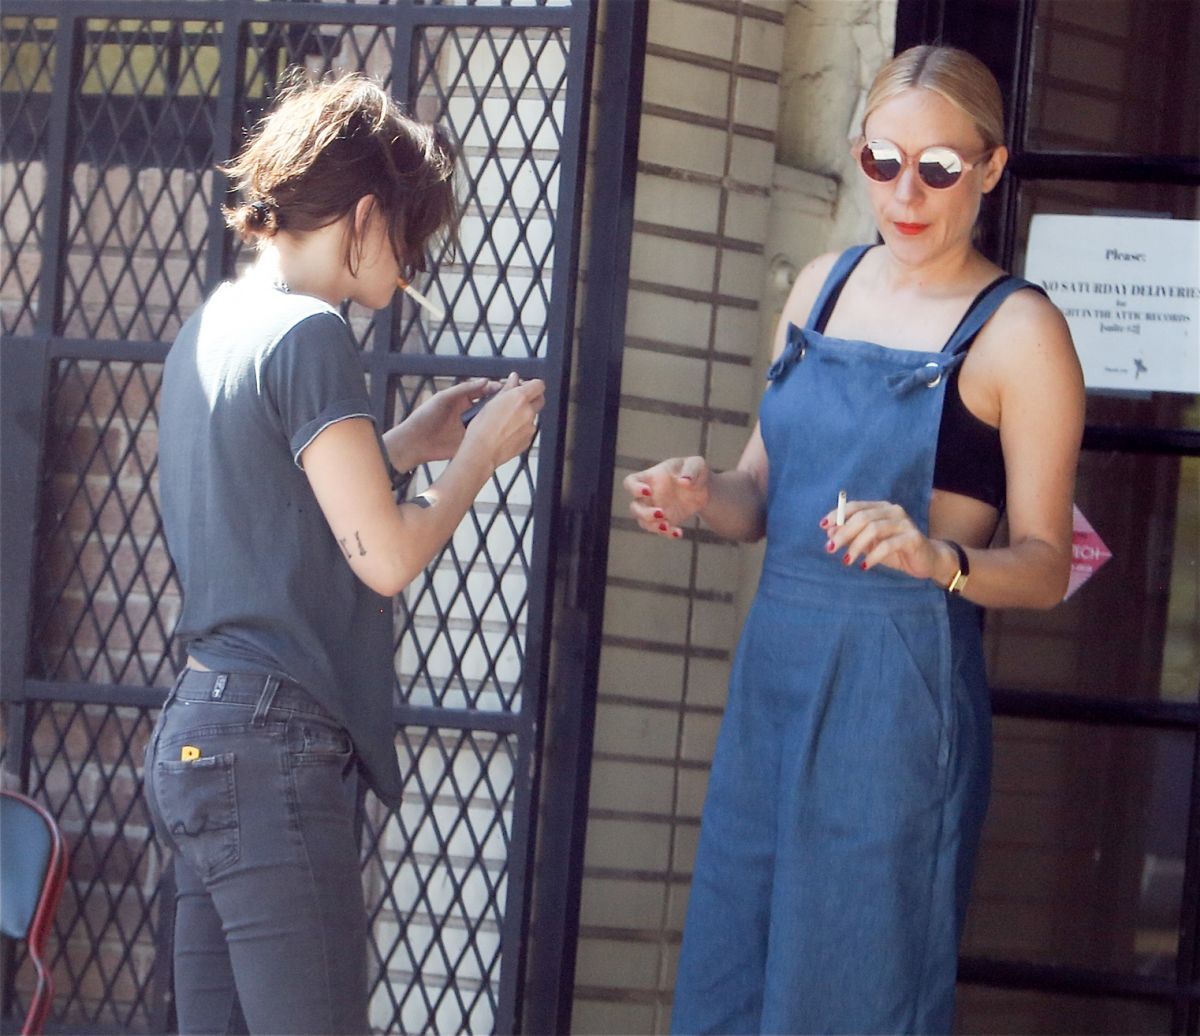 Kristen Stewart Joins Chloë Sevigny For A Cigarette Outside